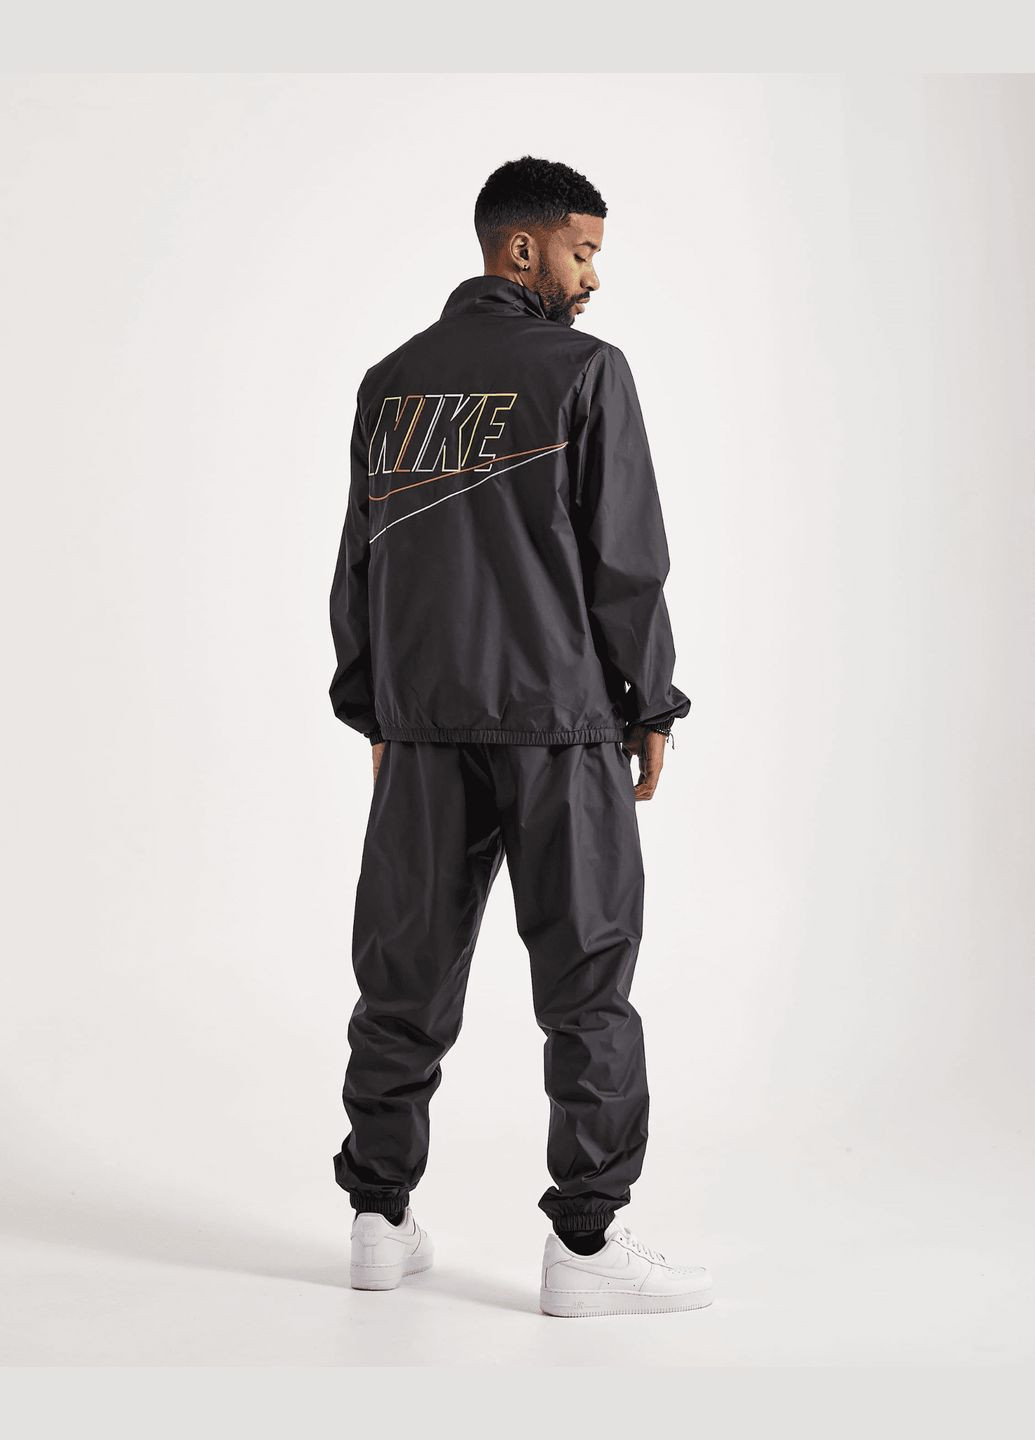 Чорна демісезонна куртка (вітровка) чоловіча club woven jacket dx0672010 весна-осінь чорна Nike